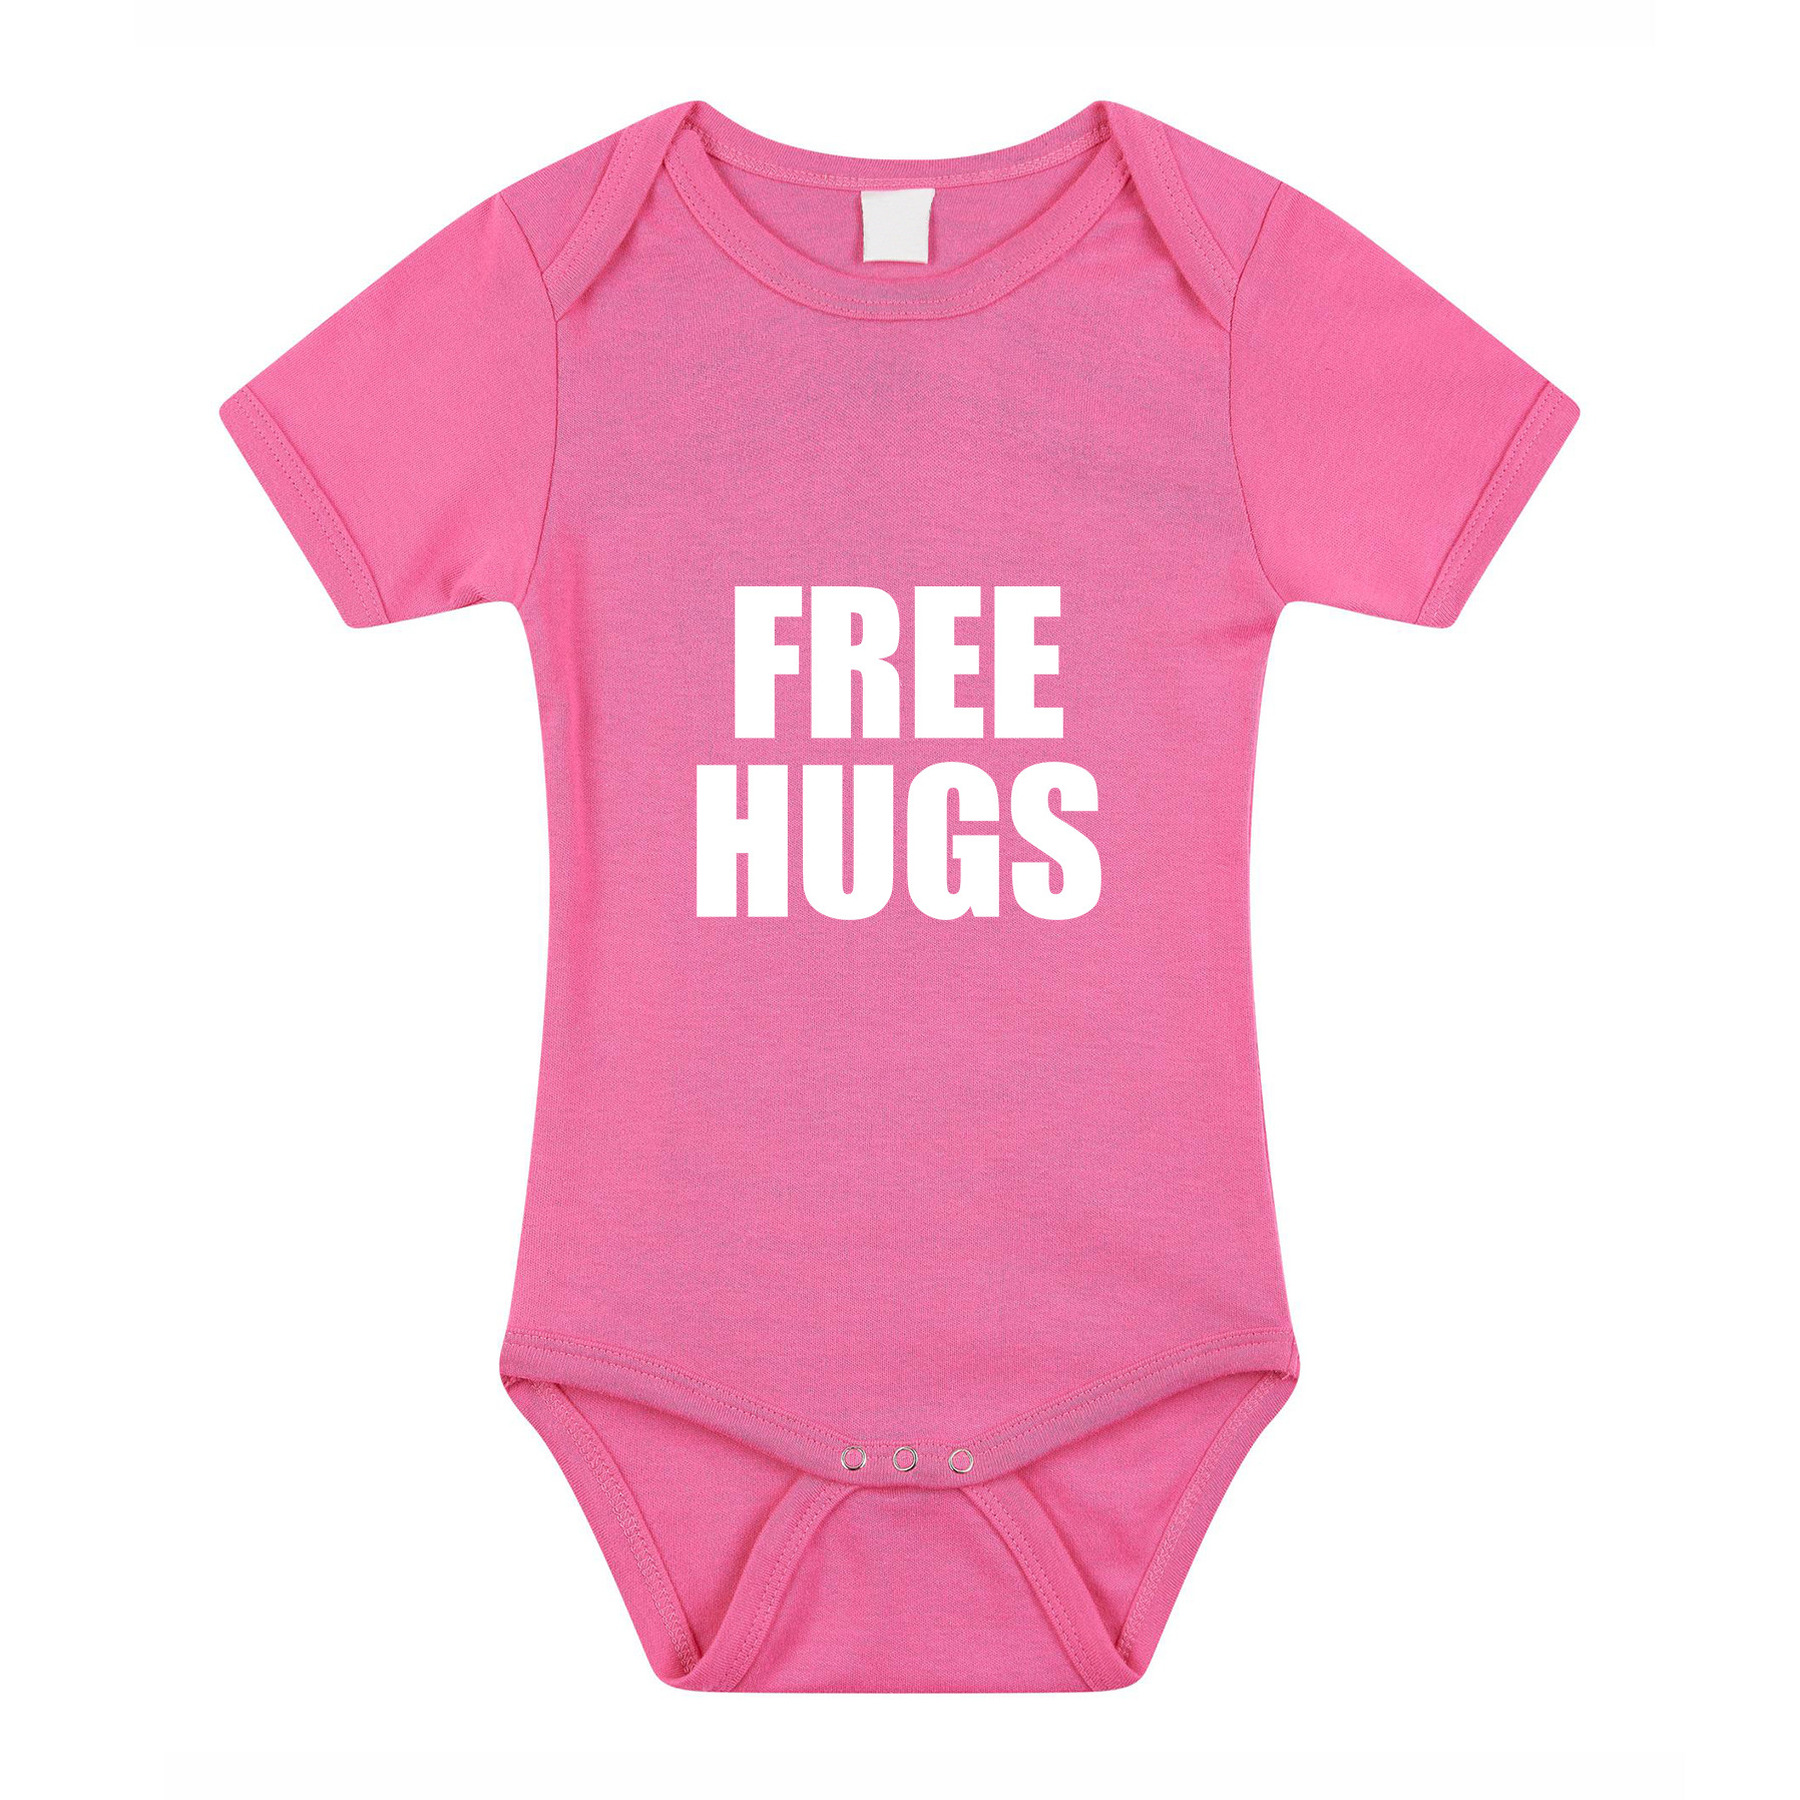 Free hugs kraamcadeau rompertje roze meisjes